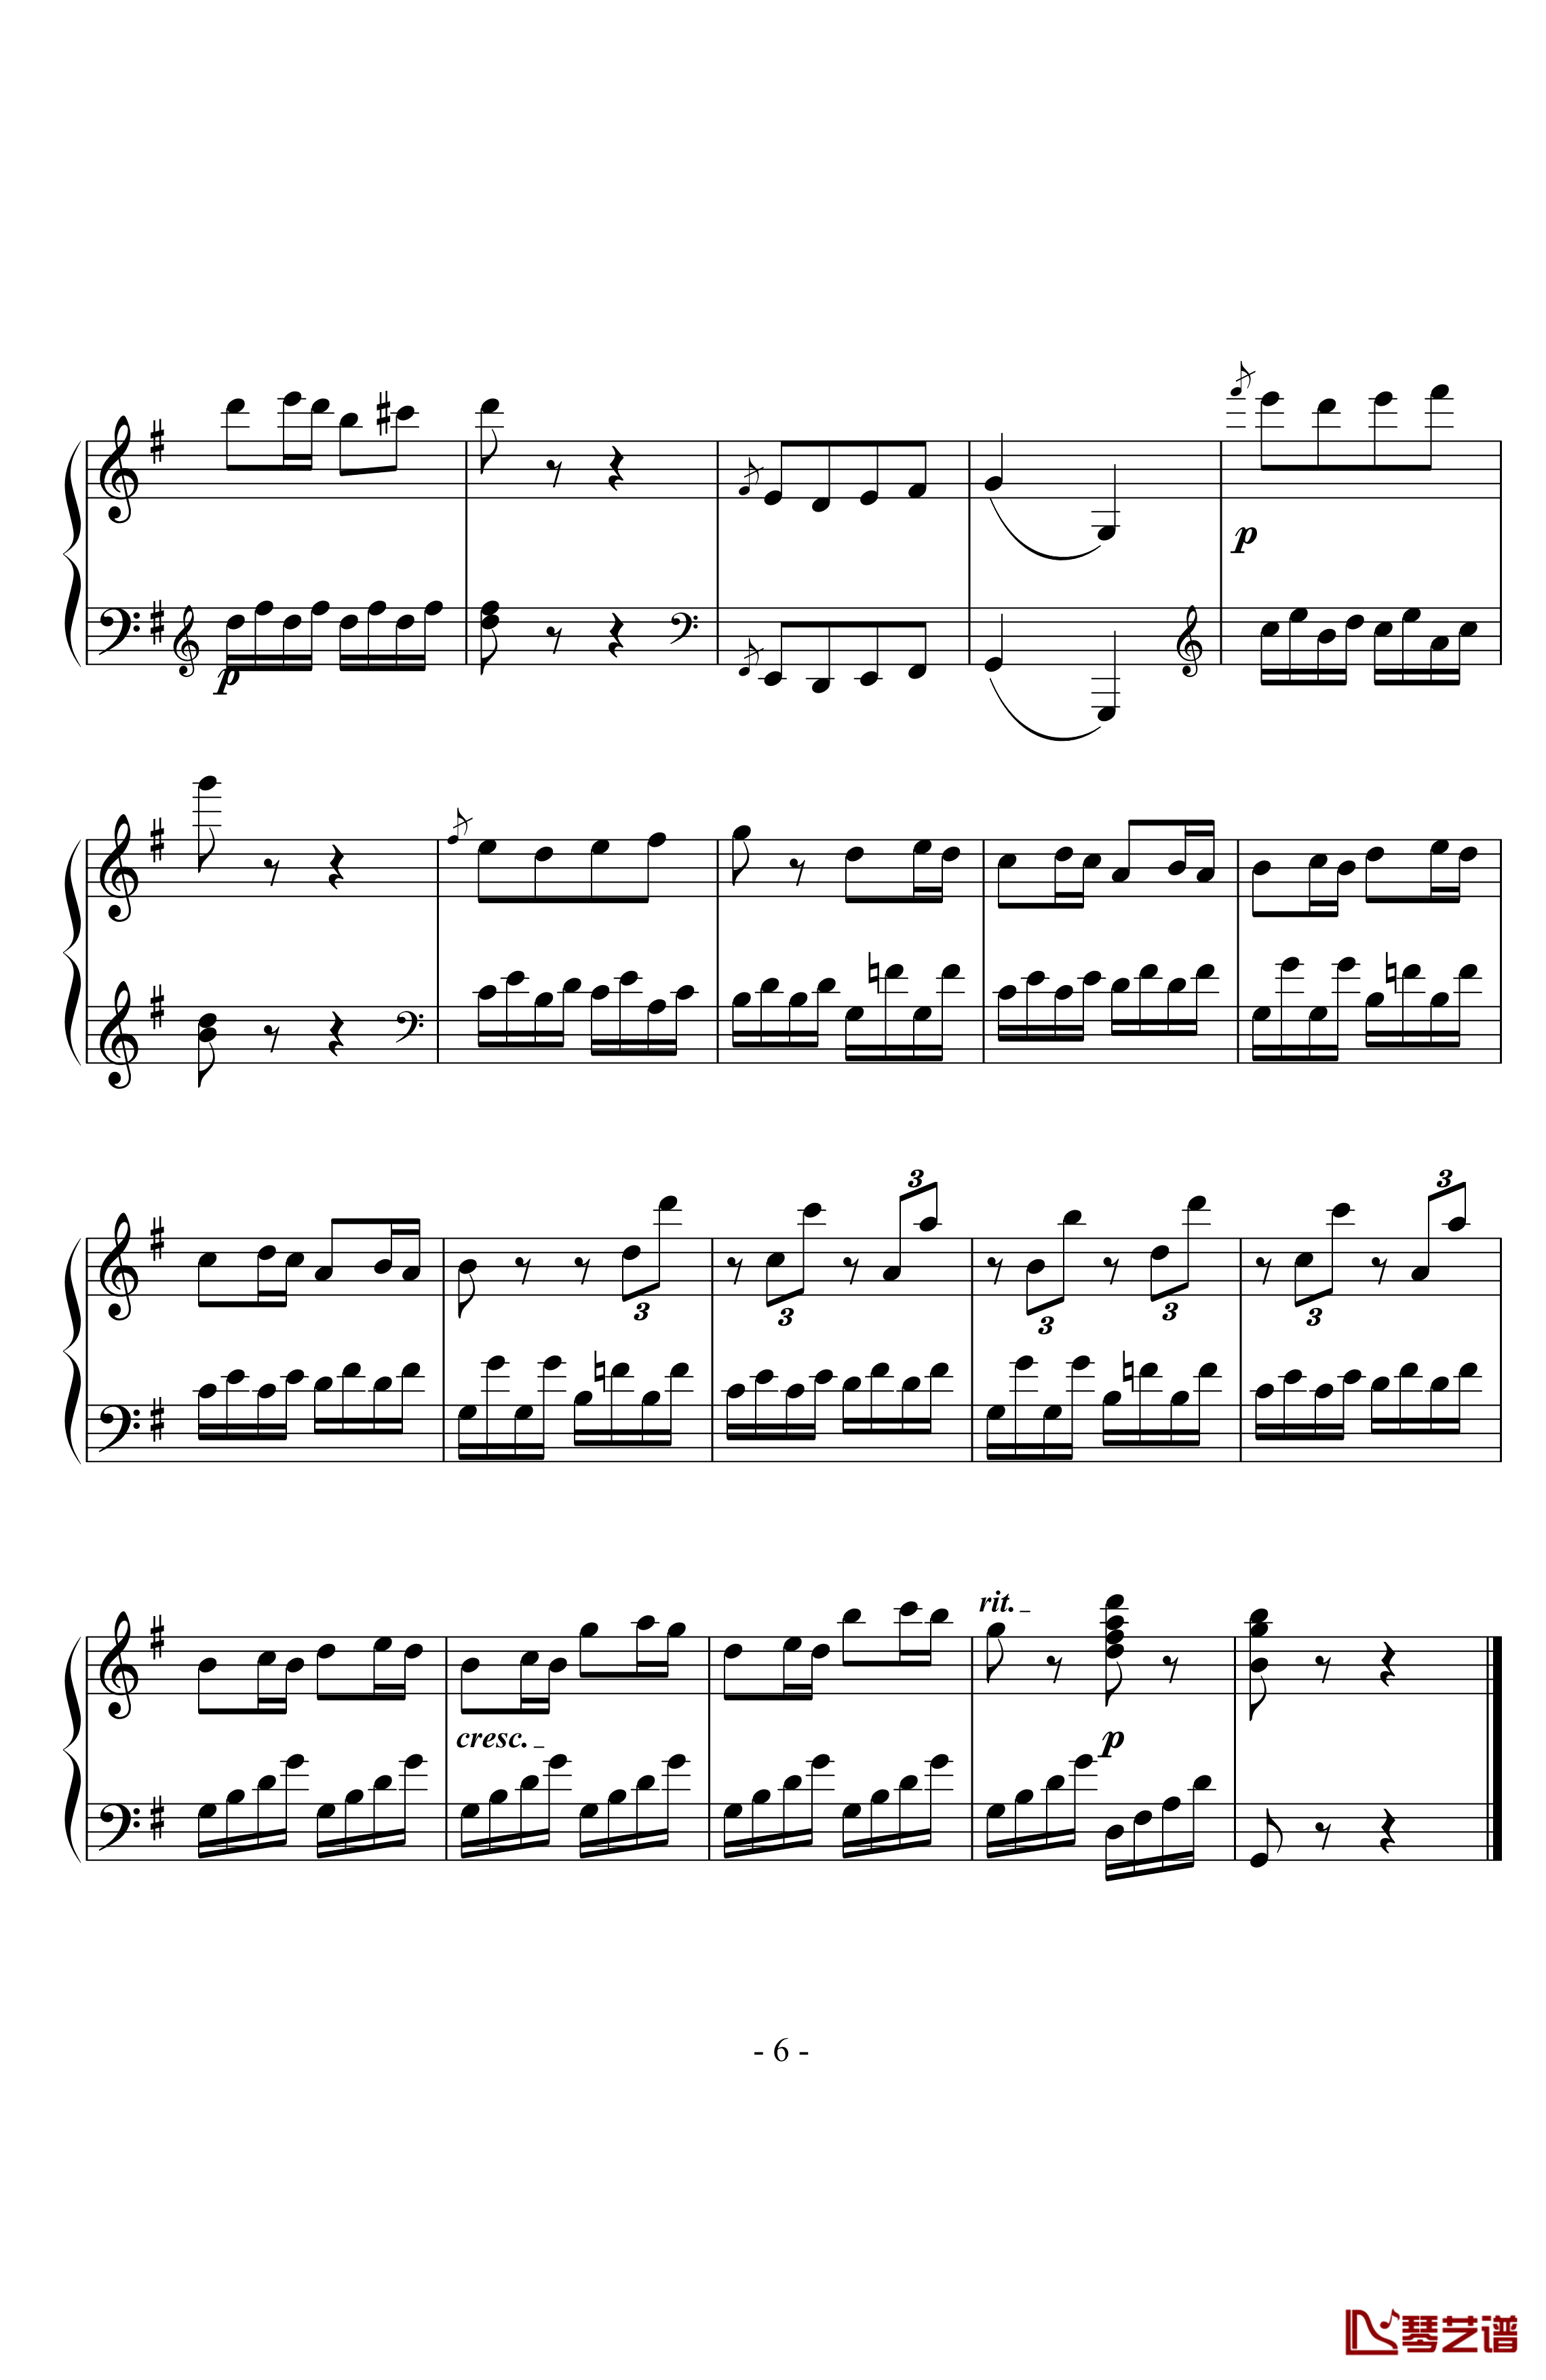 贝多芬第二十五钢琴奏鸣曲钢琴谱-贝多芬-beethoven6